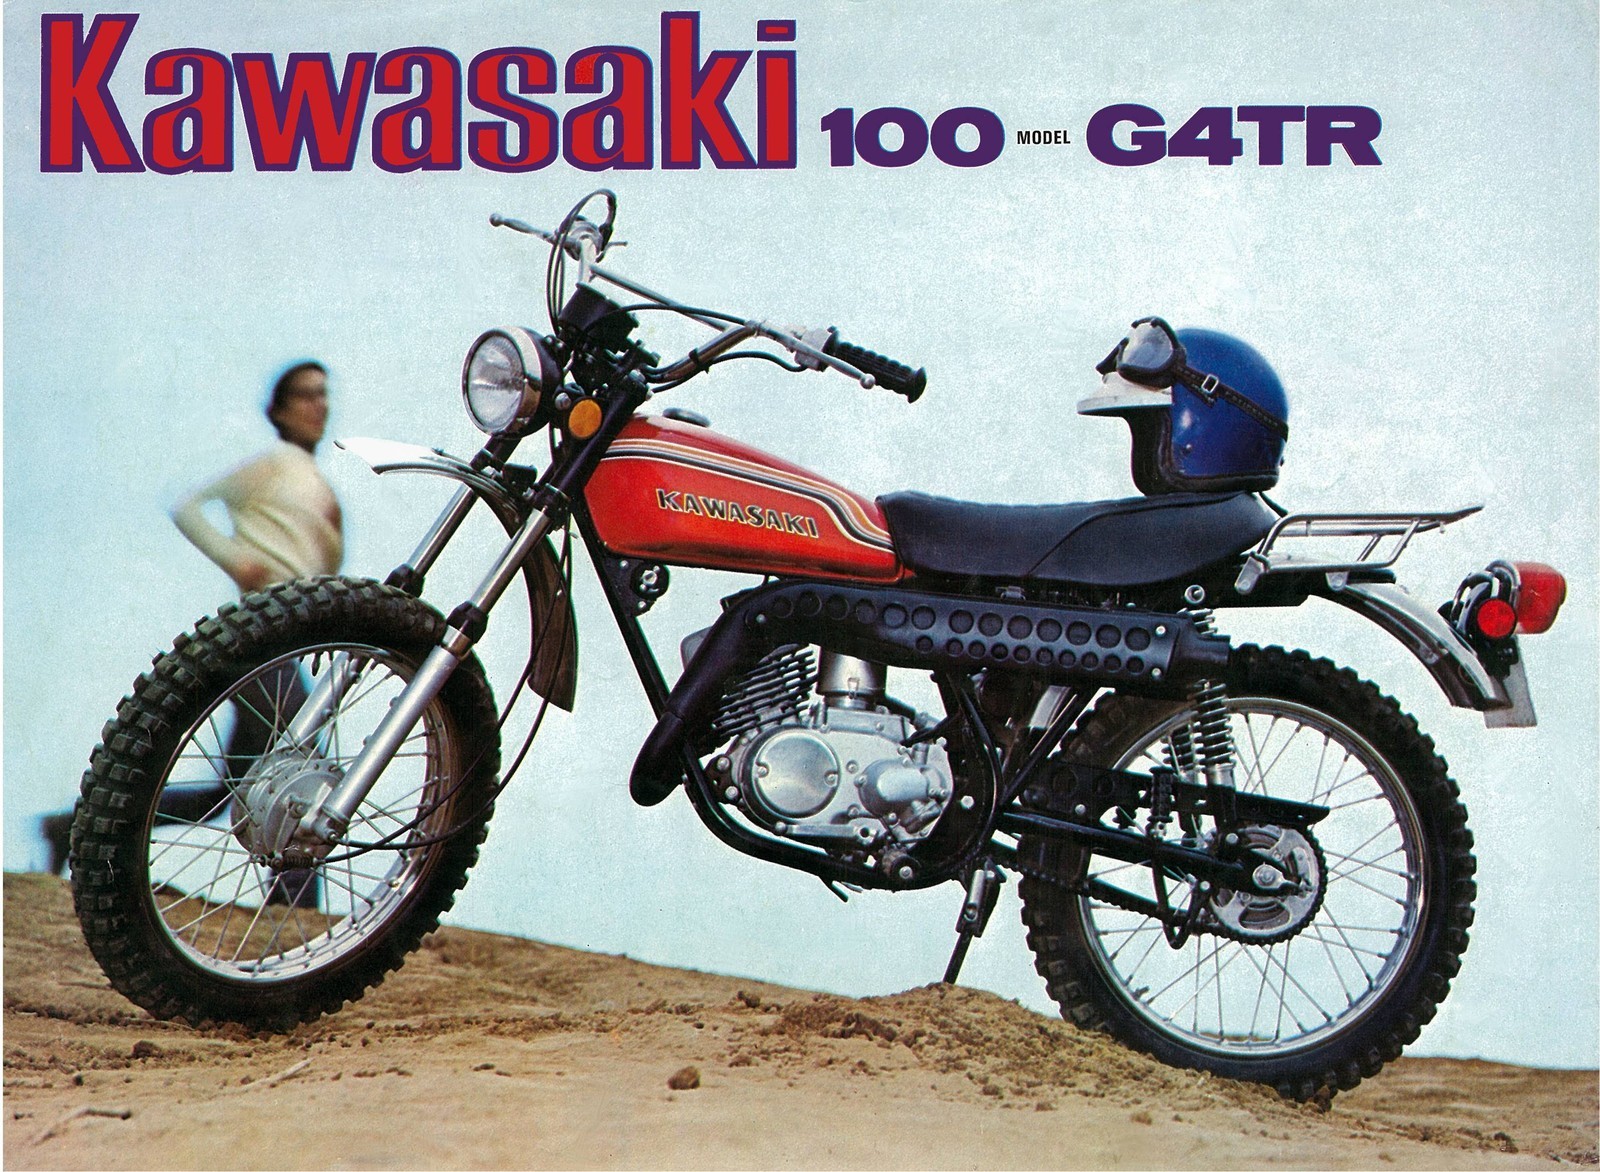 Kawasaki 1972 G4TR-B Restoration